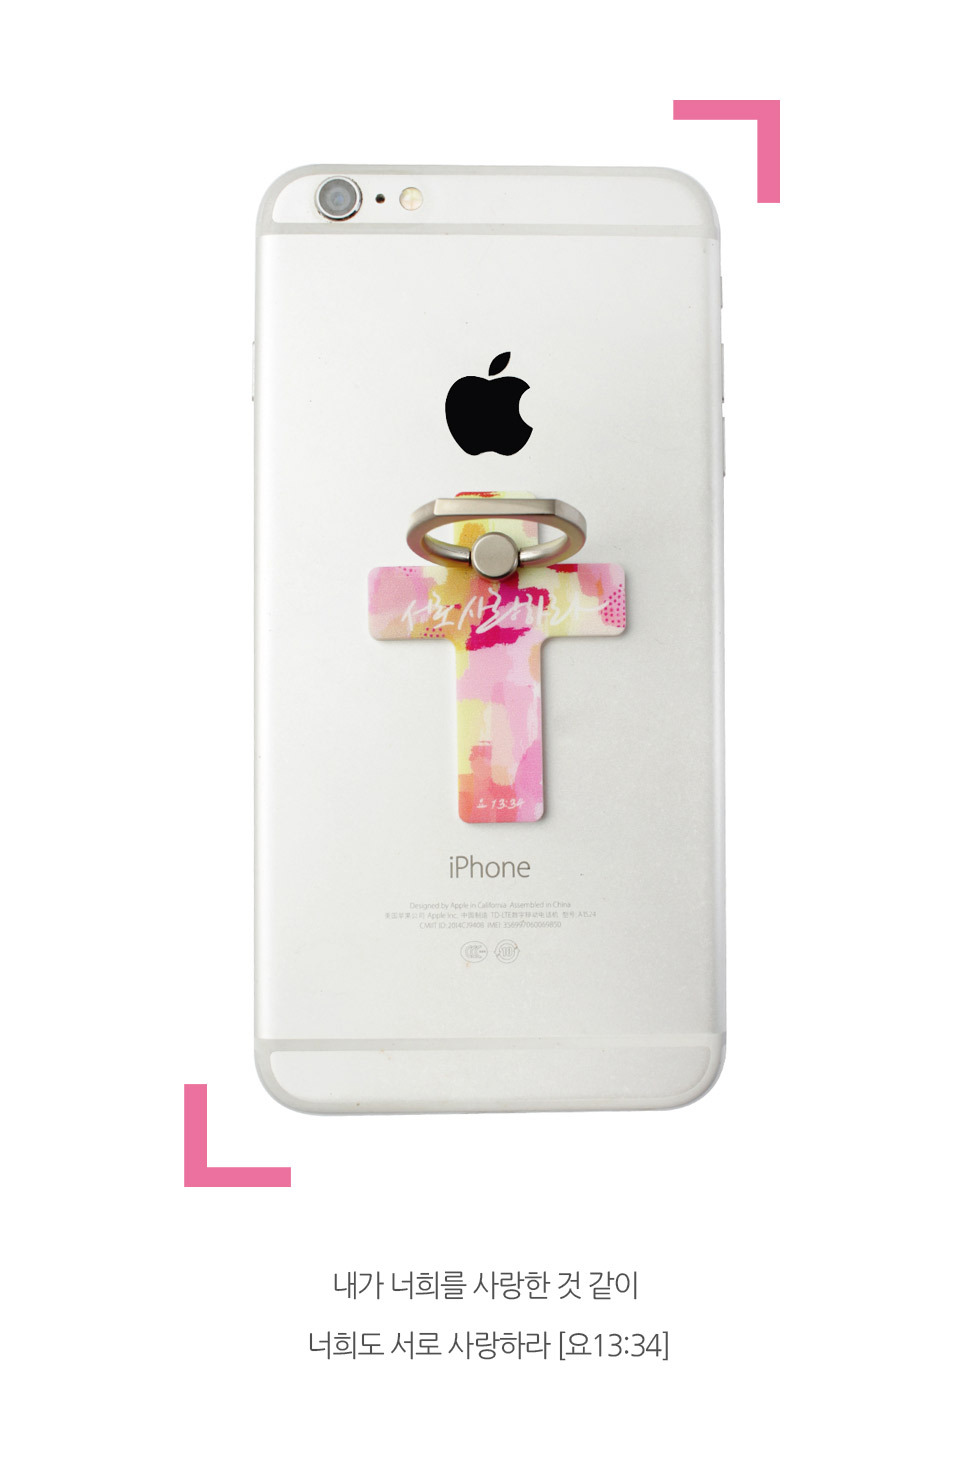 스마트폰 거치대 십자가링 3탄 제품보기3 - 핑크, 서로 사랑하라 사용예